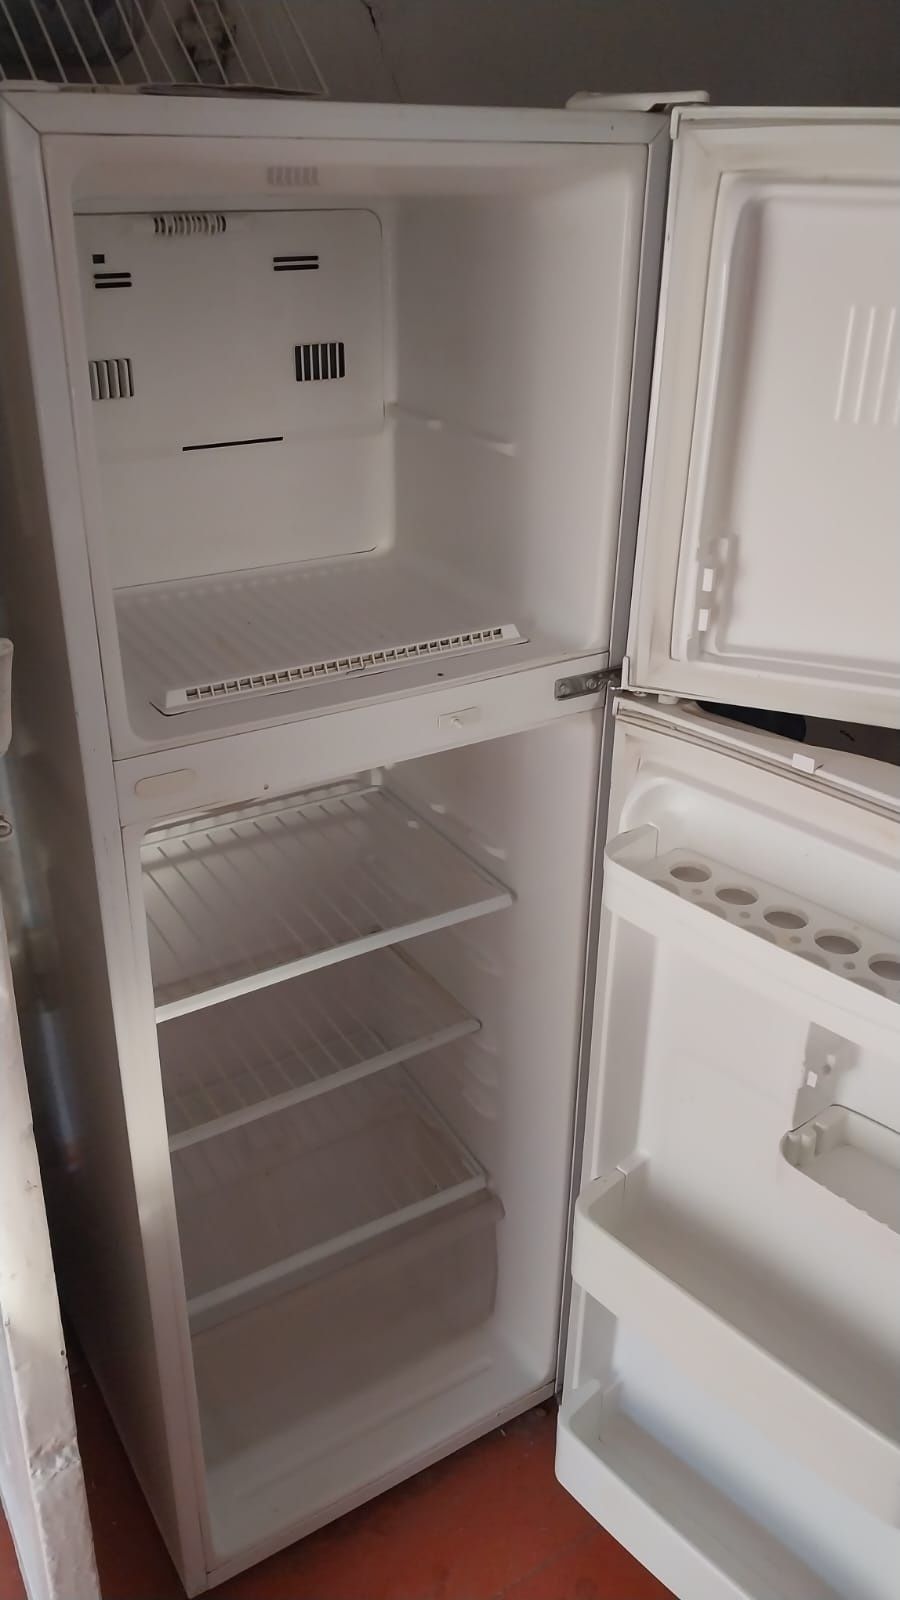 Продается холодильник